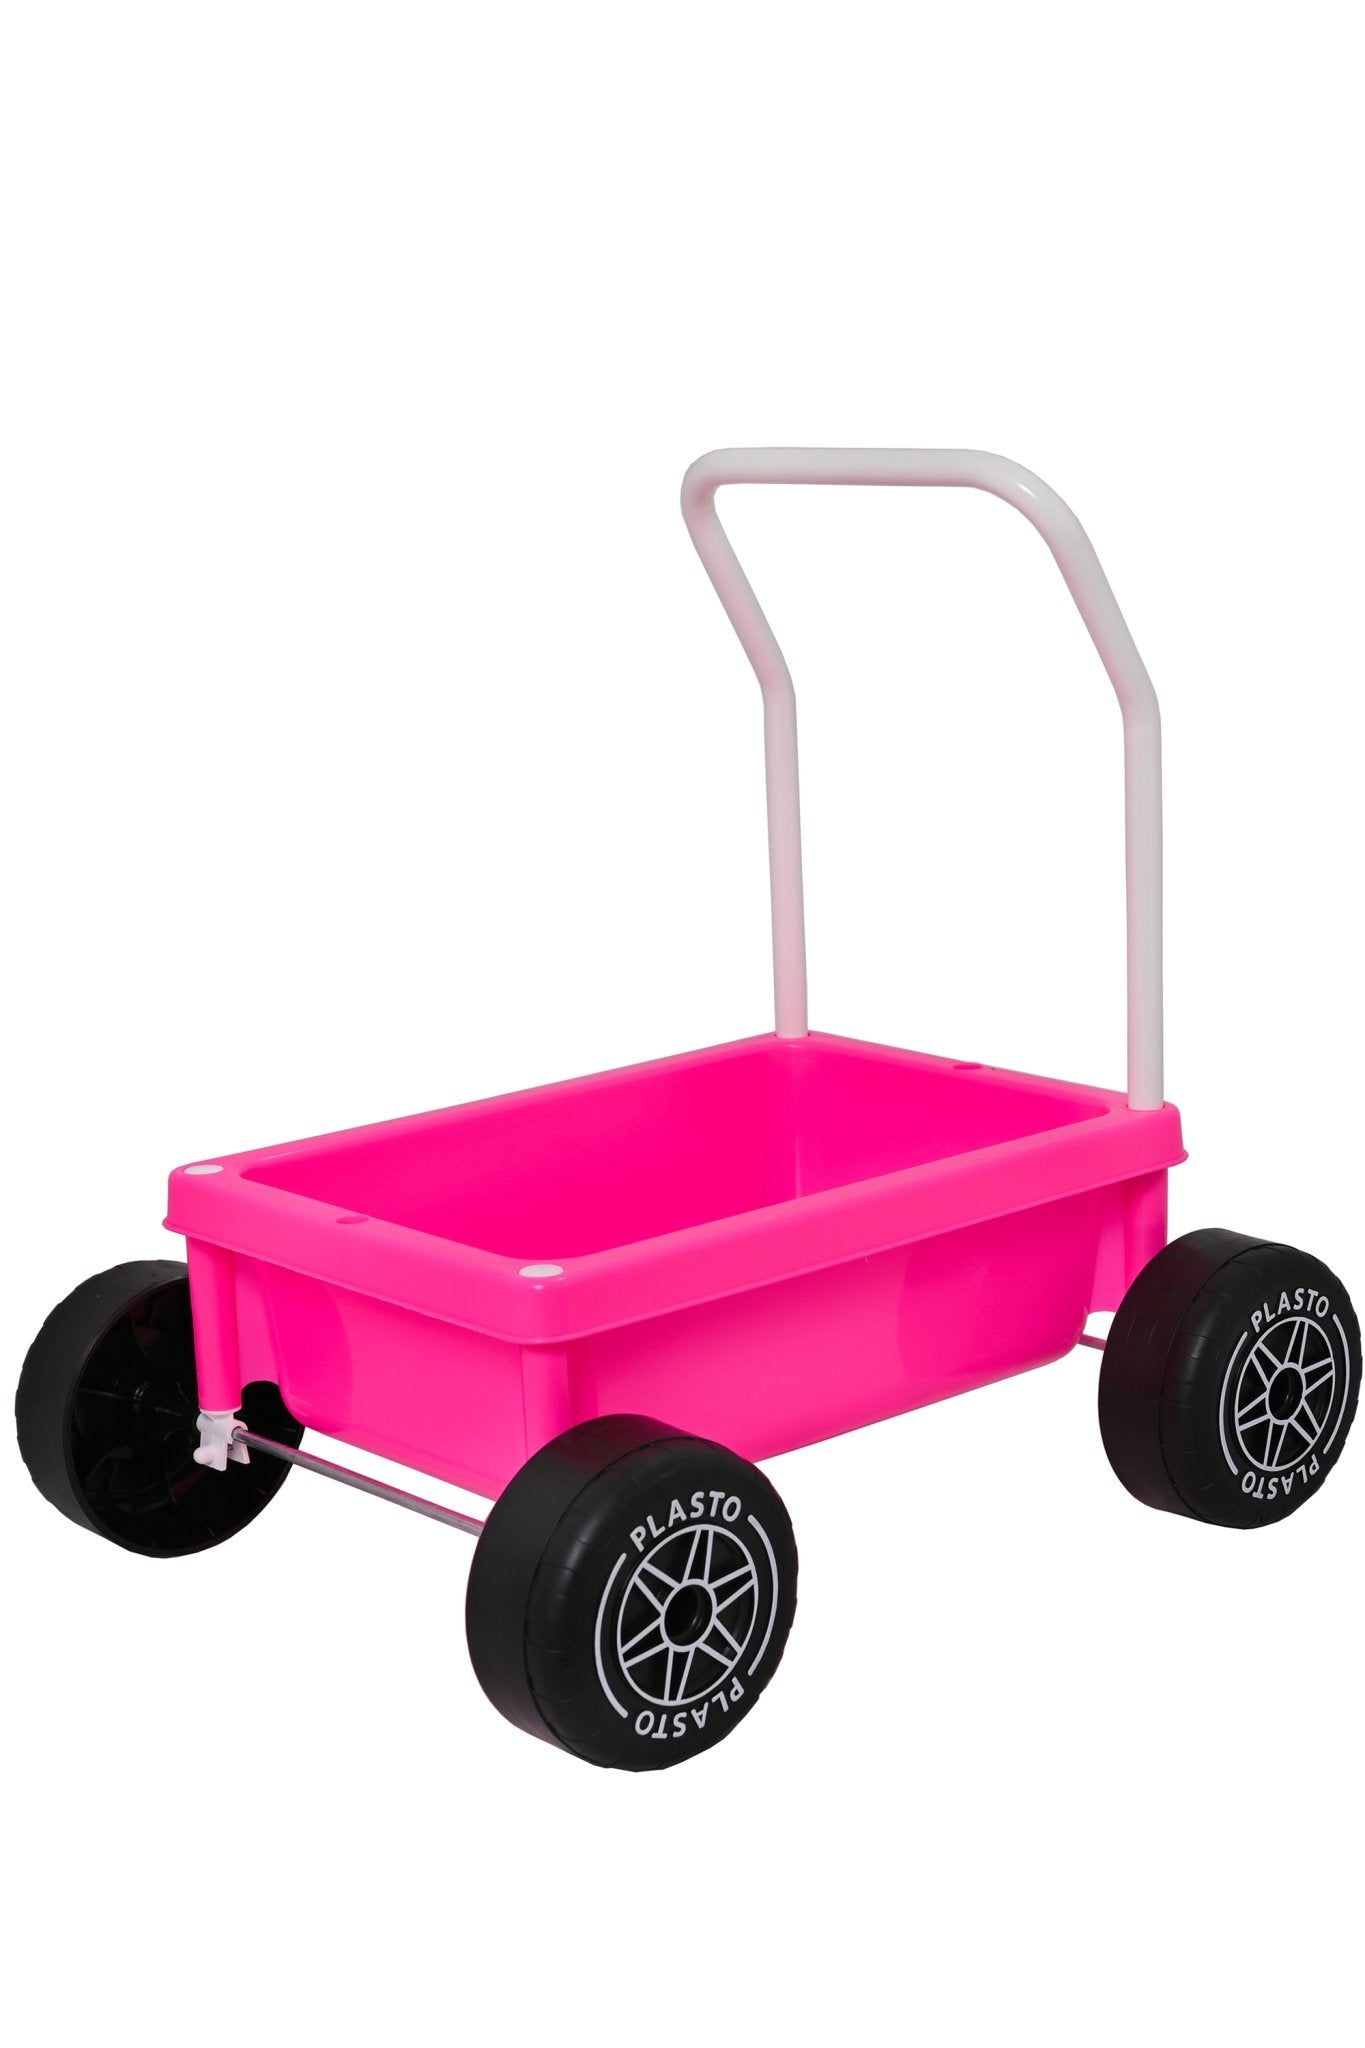 Baby walker with silent wheels, 48cm (pink) - Koko-Kamel.com